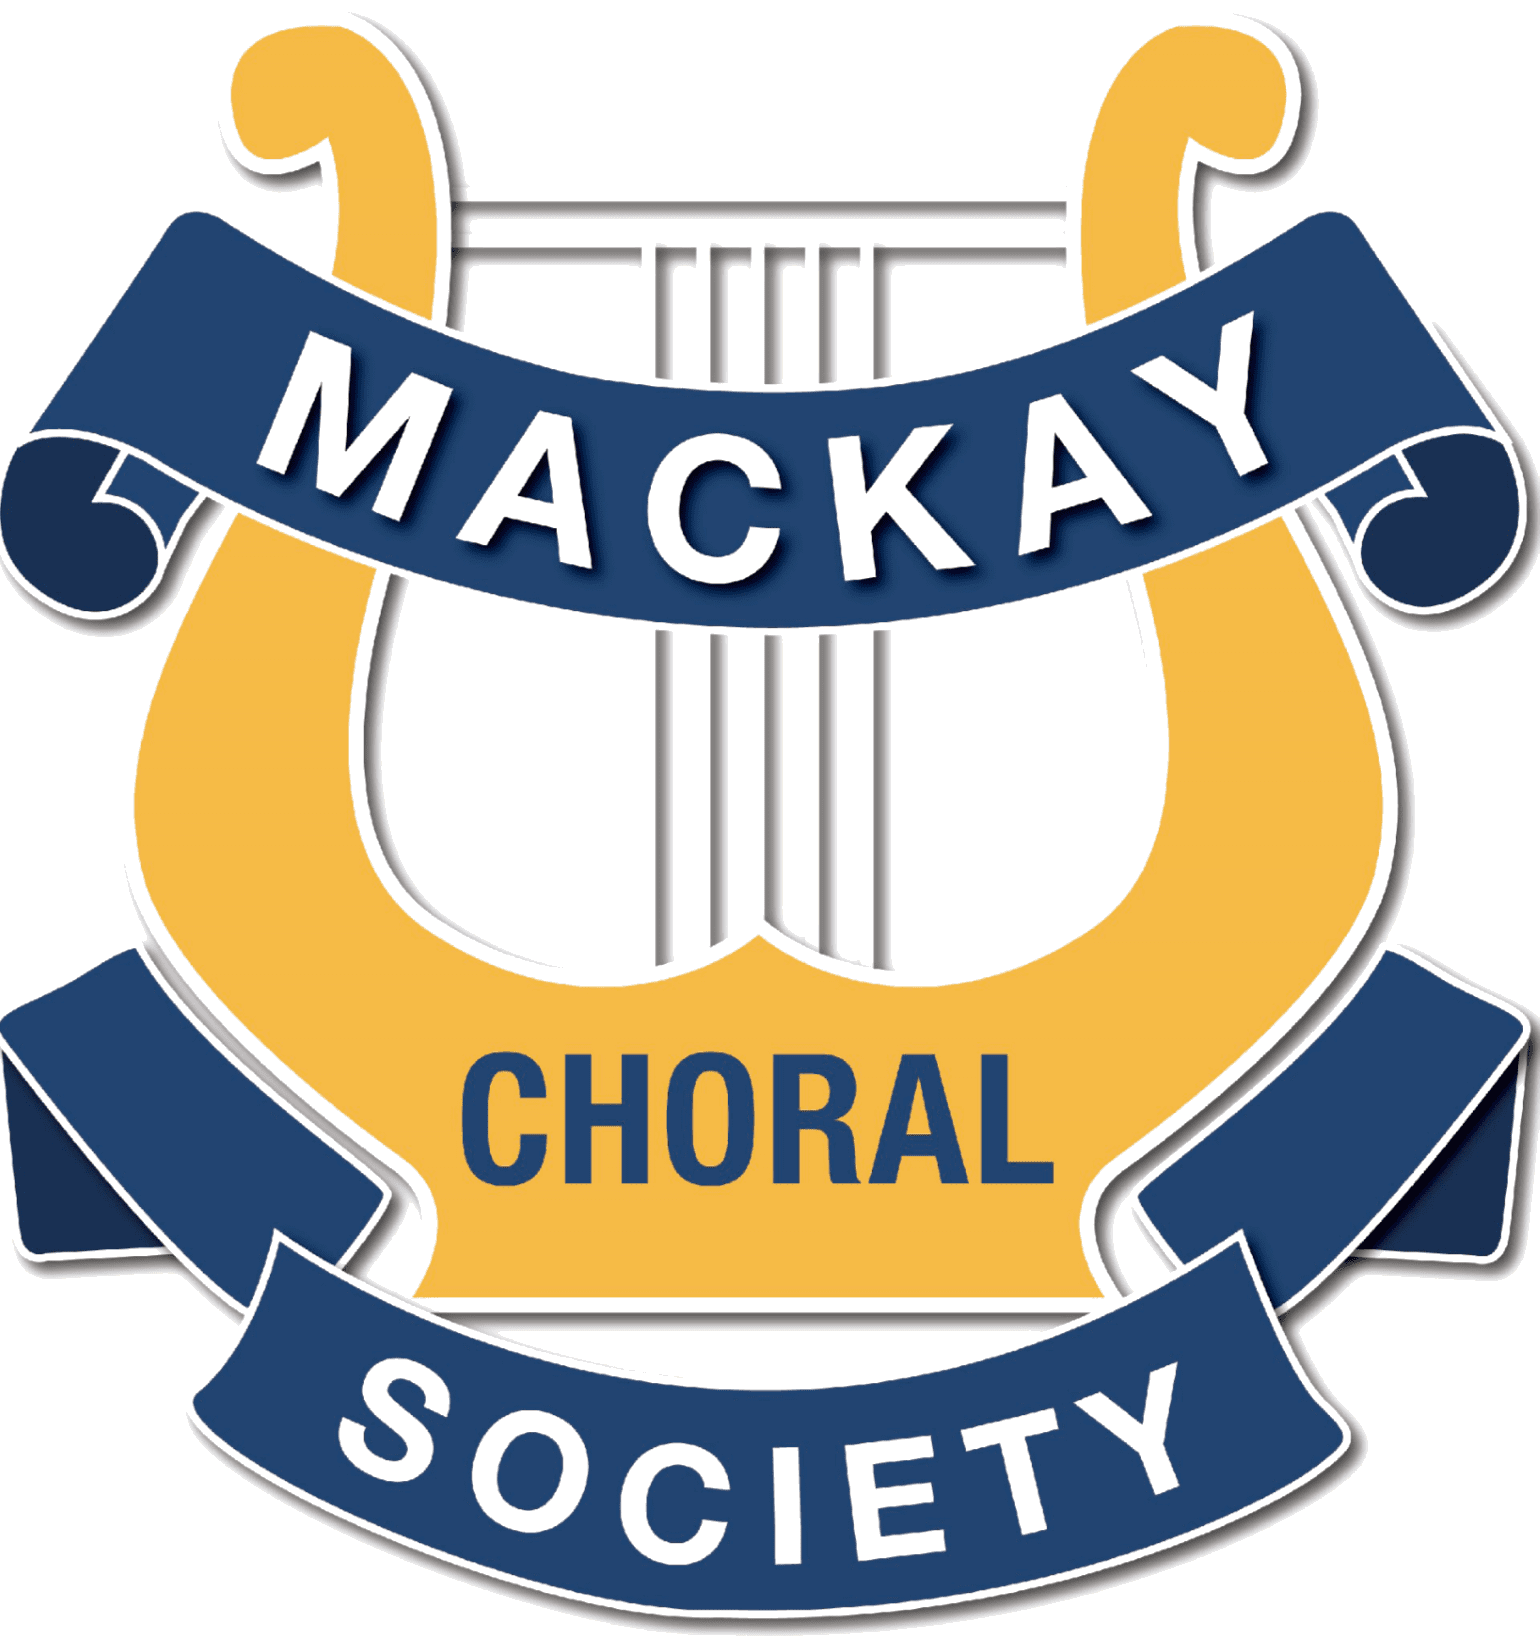 Mackay Choral Society